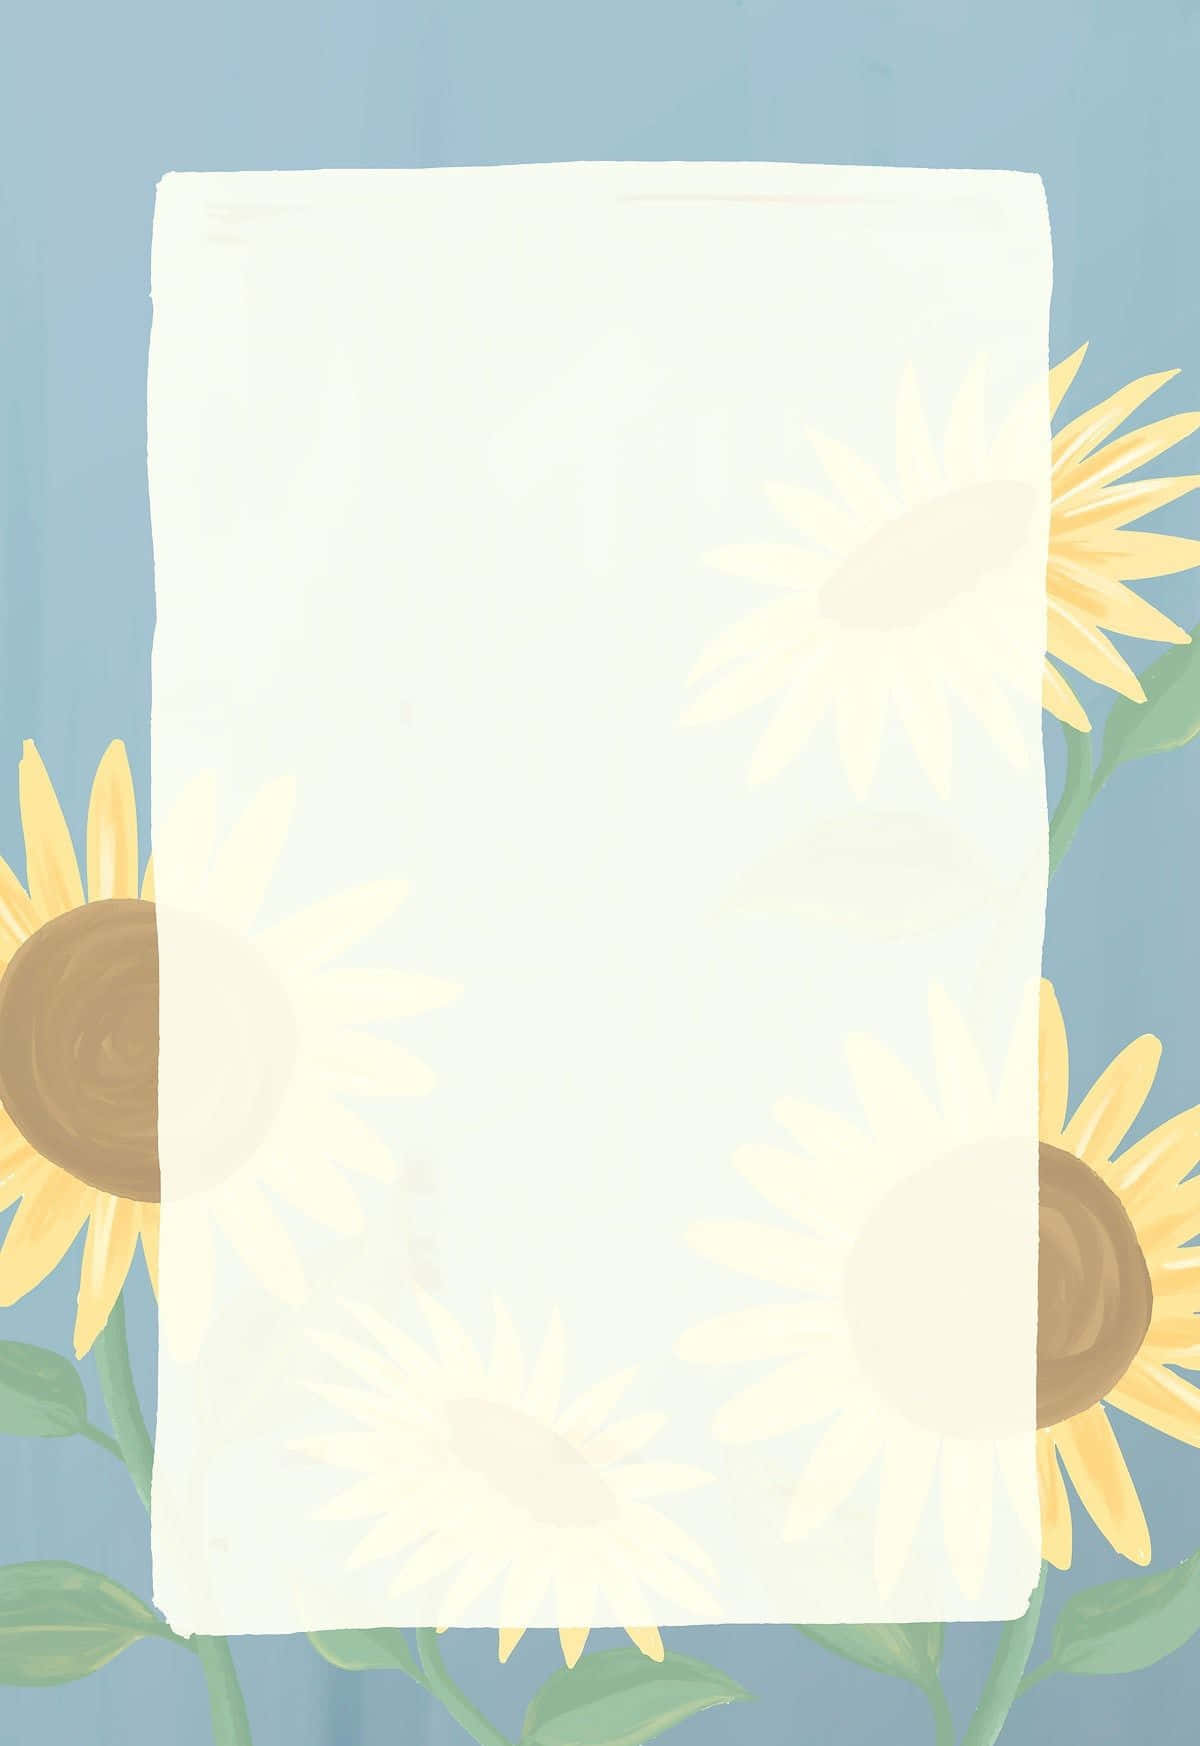 Lassdie Schönheit Einer Sonnenblume Sonnenschein In Deinen Tag Bringen Wallpaper